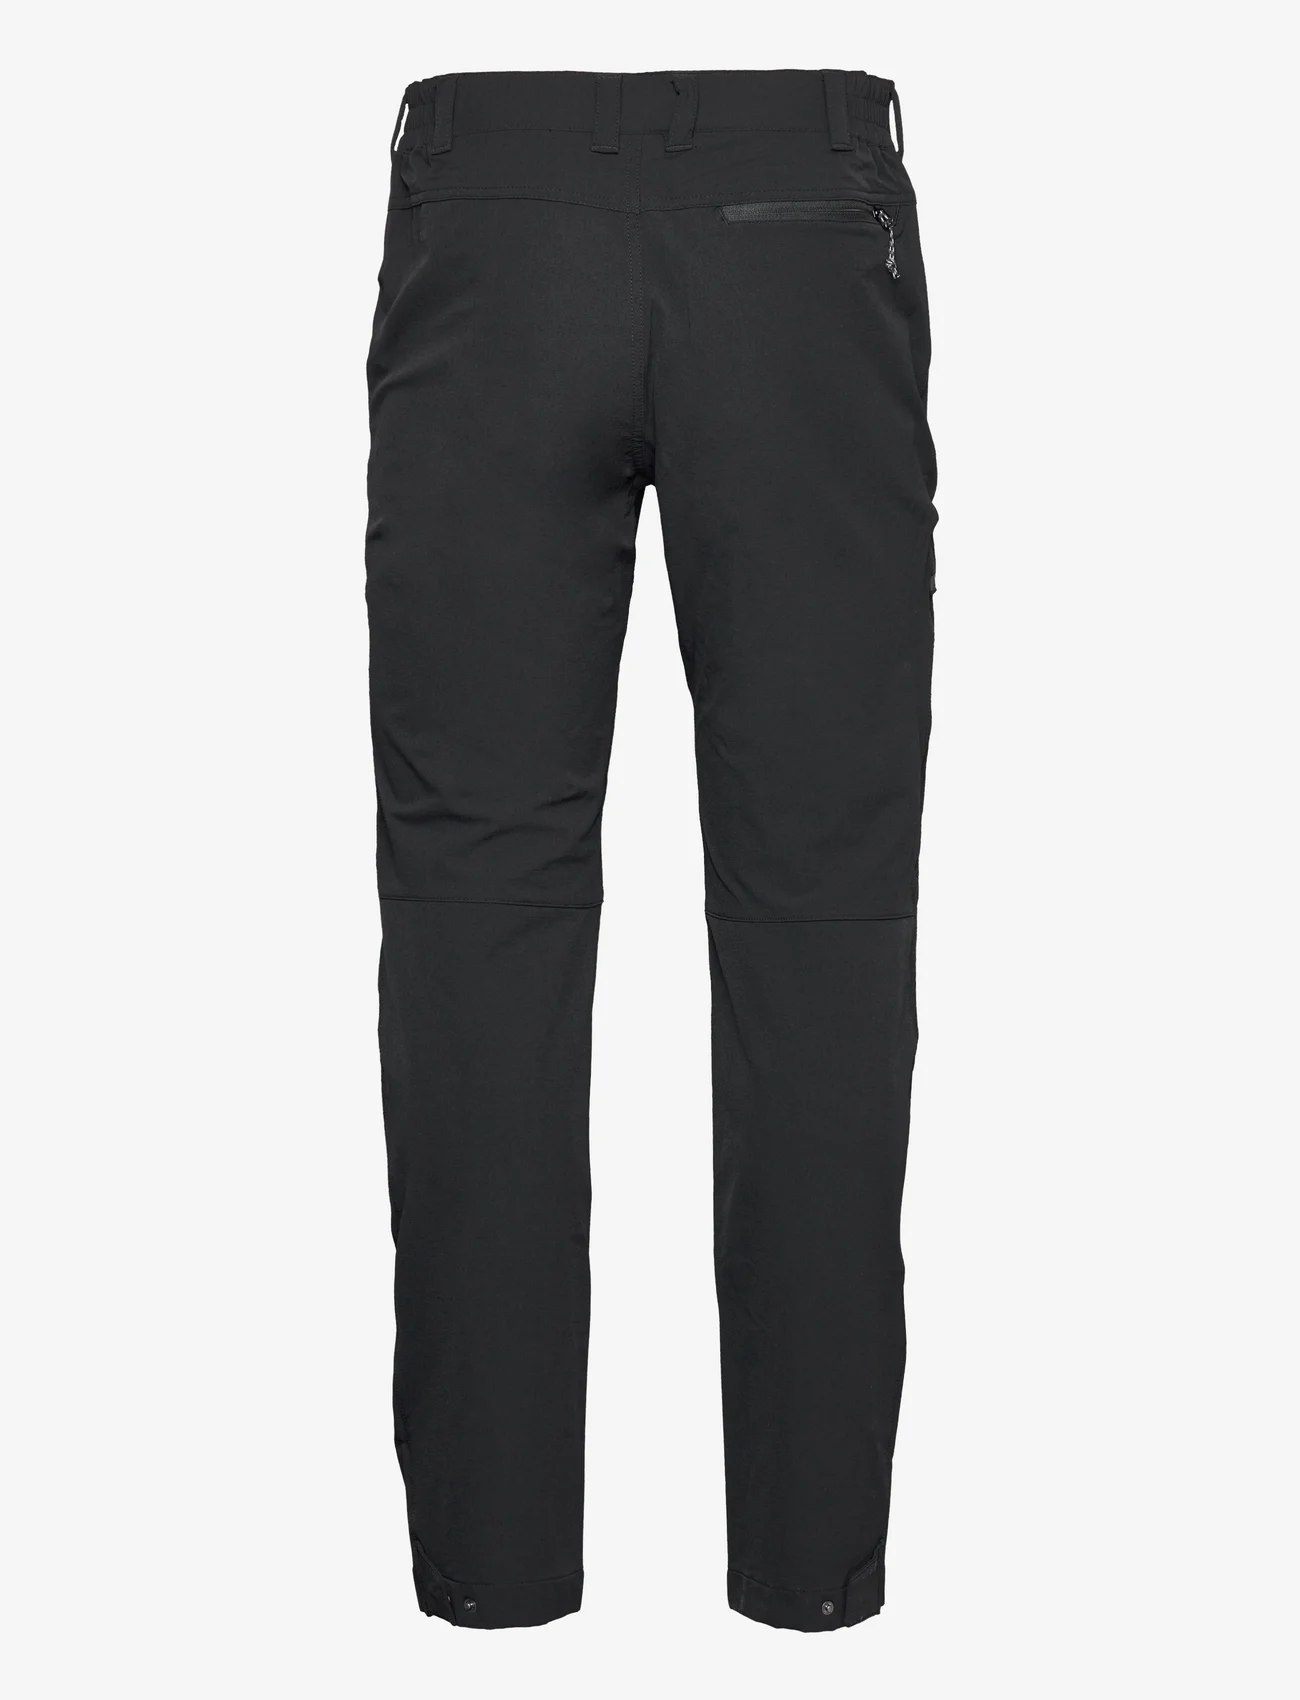 Jack Wolfskin - ACTIVATE XT PANTS M - sports pants - black - 1